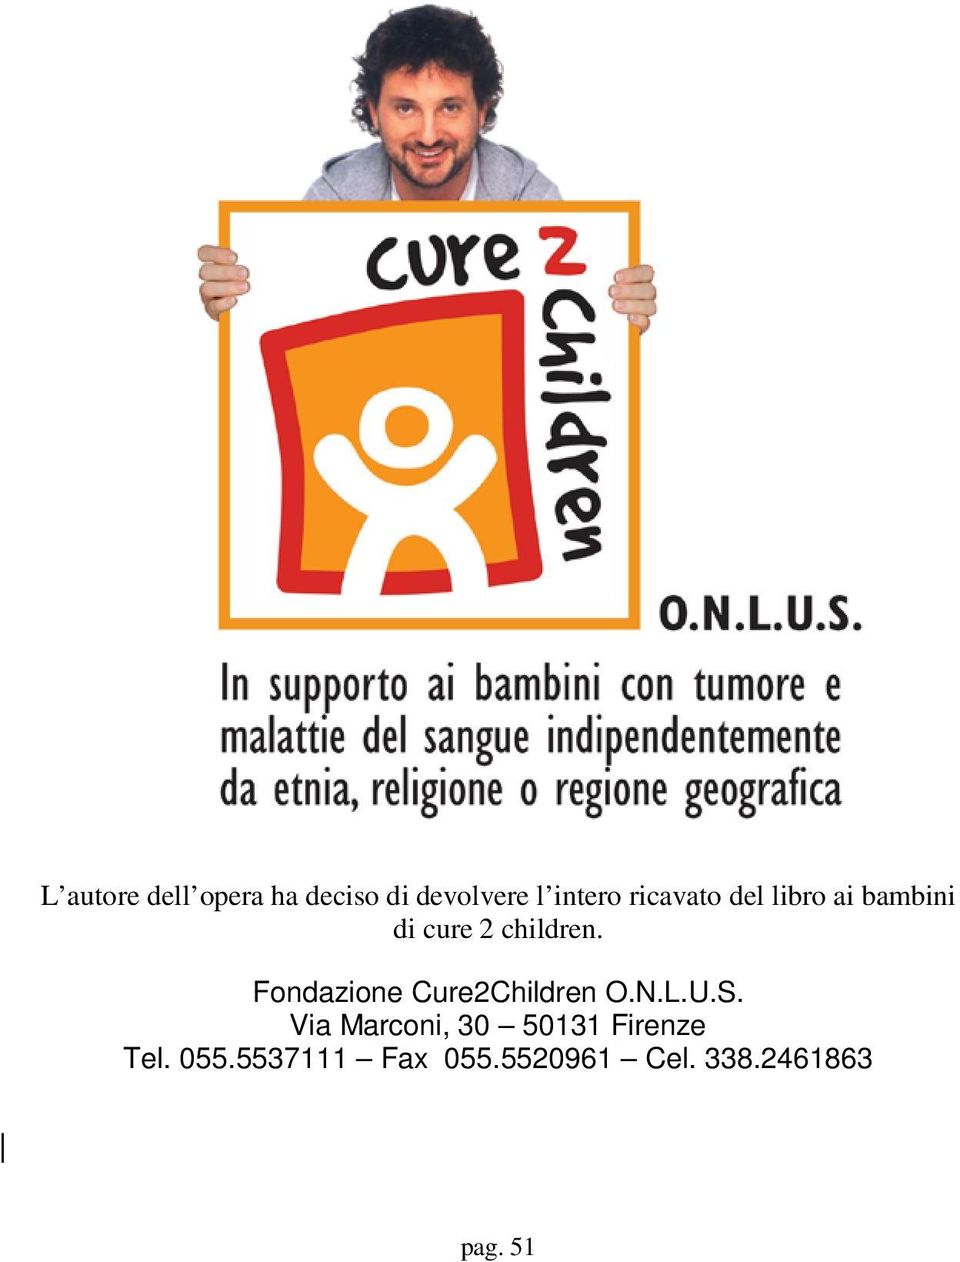 Fondazione Cure2Children O.N.L.U.S.